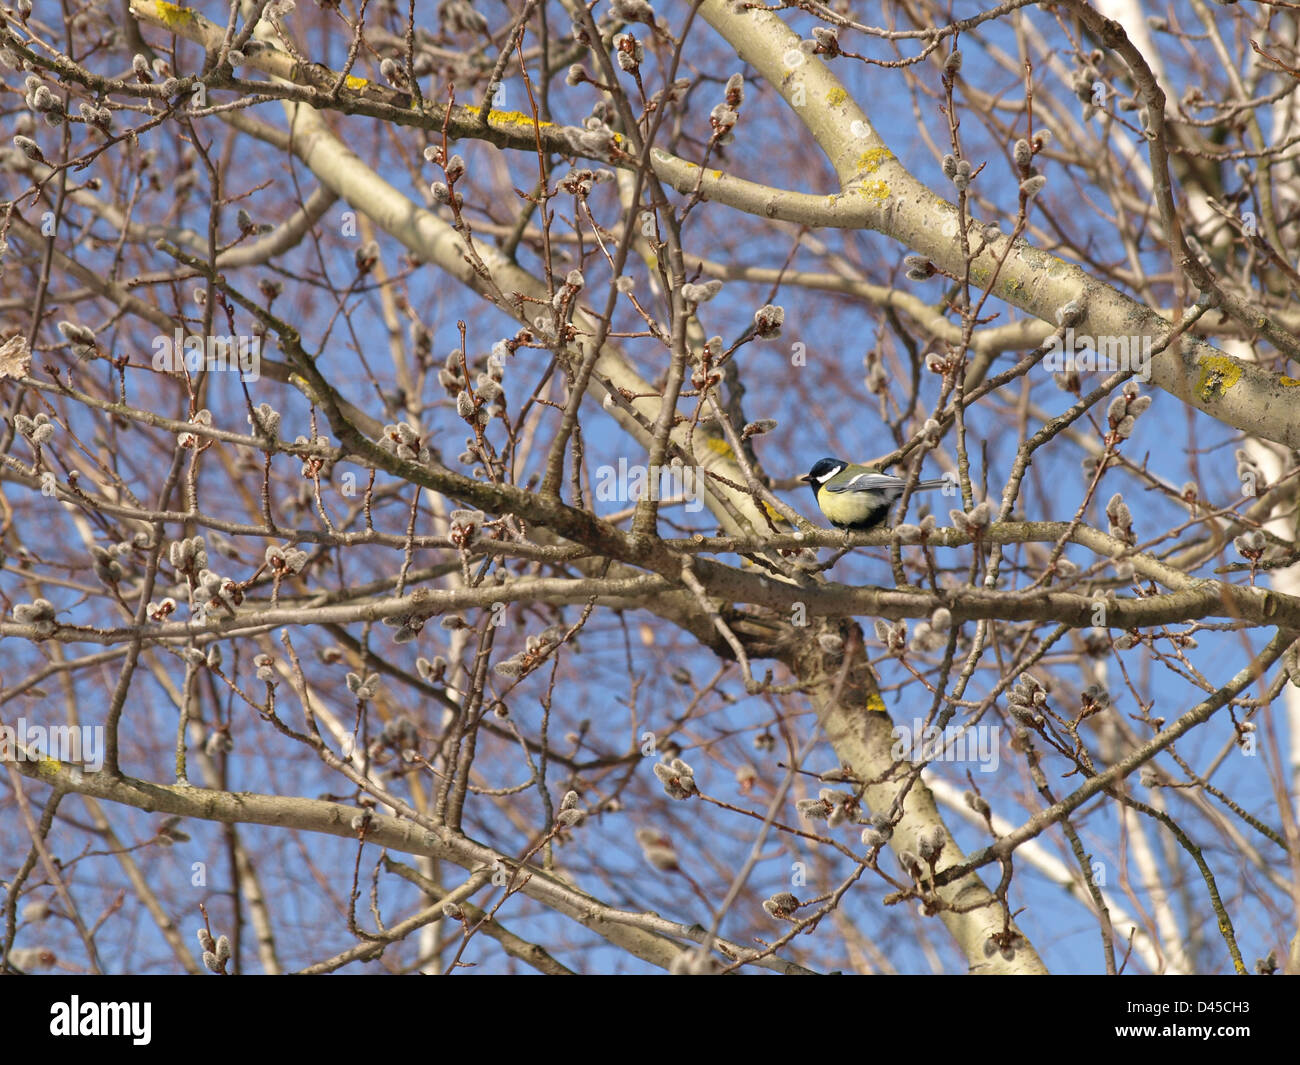 willow catkins in spring / Salix / Weiden Kätzchen im Frühling Stock Photo